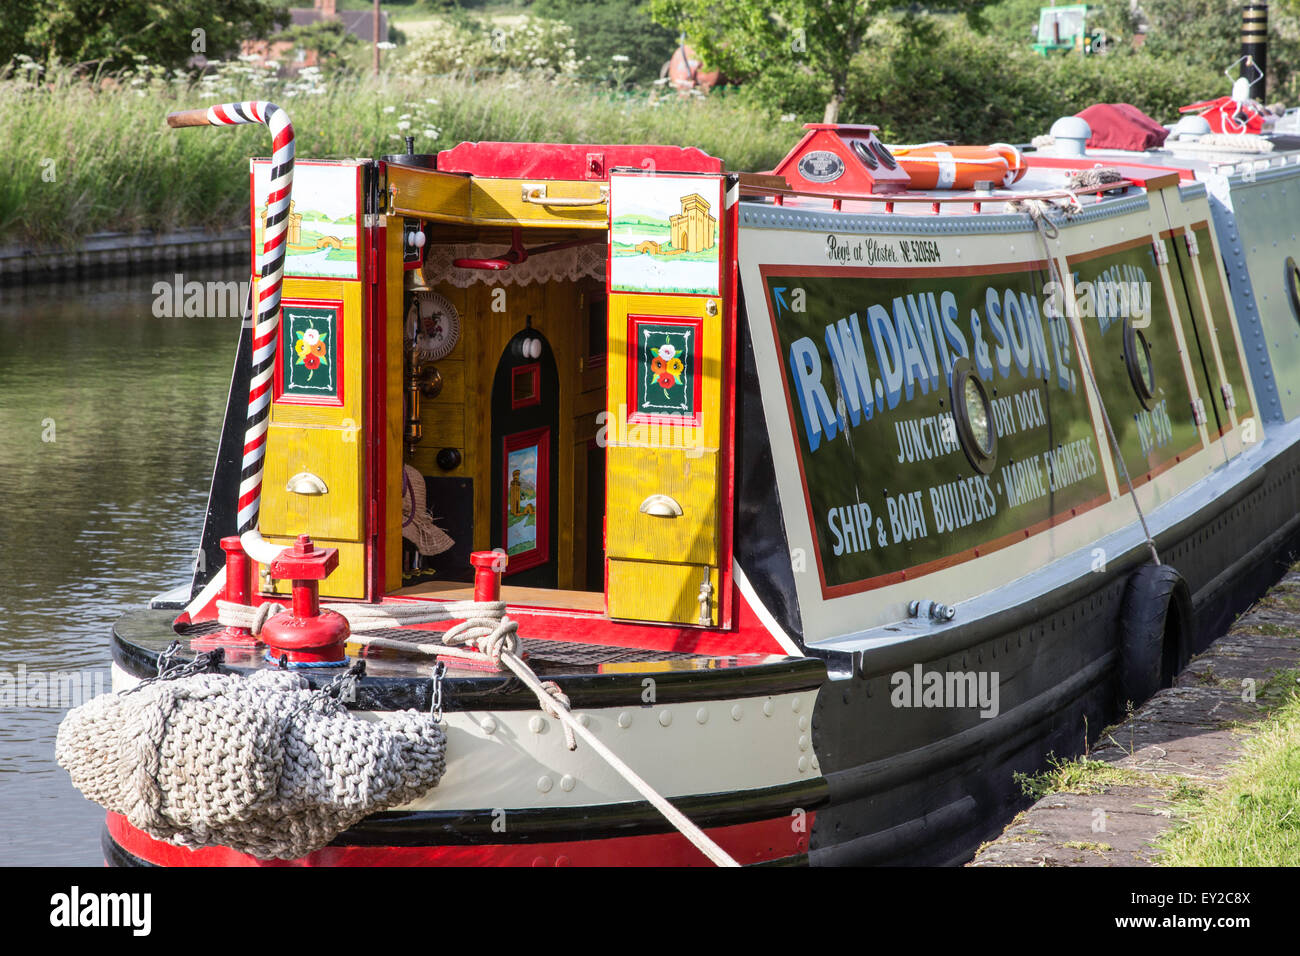 Traditional narrowboat, England, UK Stock Photo